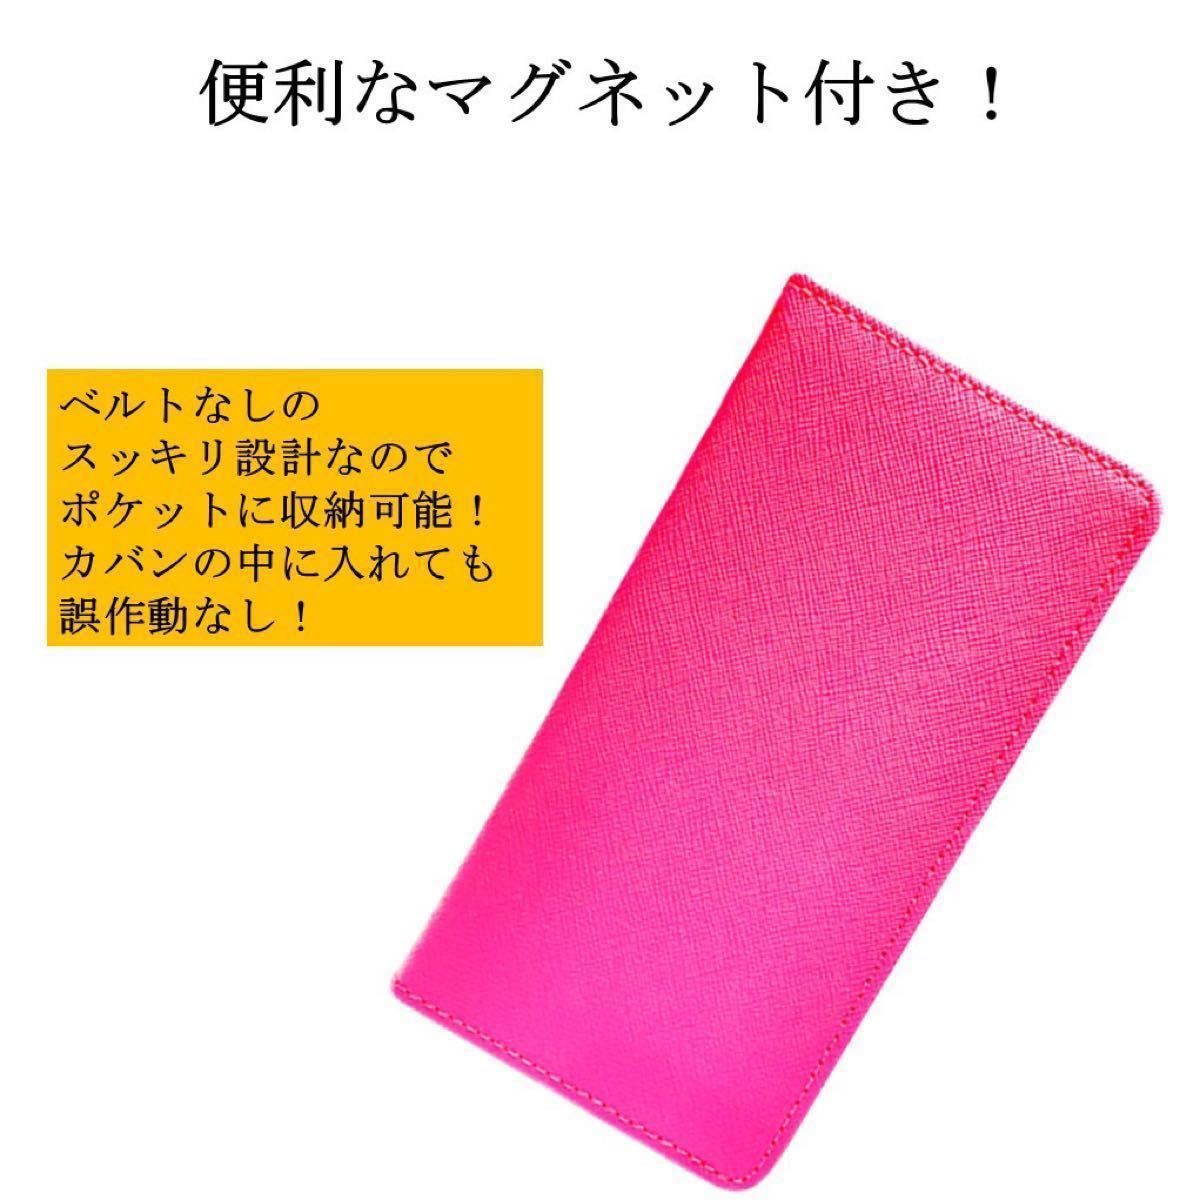 AQUOS sense 4 lite basic 5G アクオス センス スマホケース 手帳型 スマホカバー シンプル ピンク